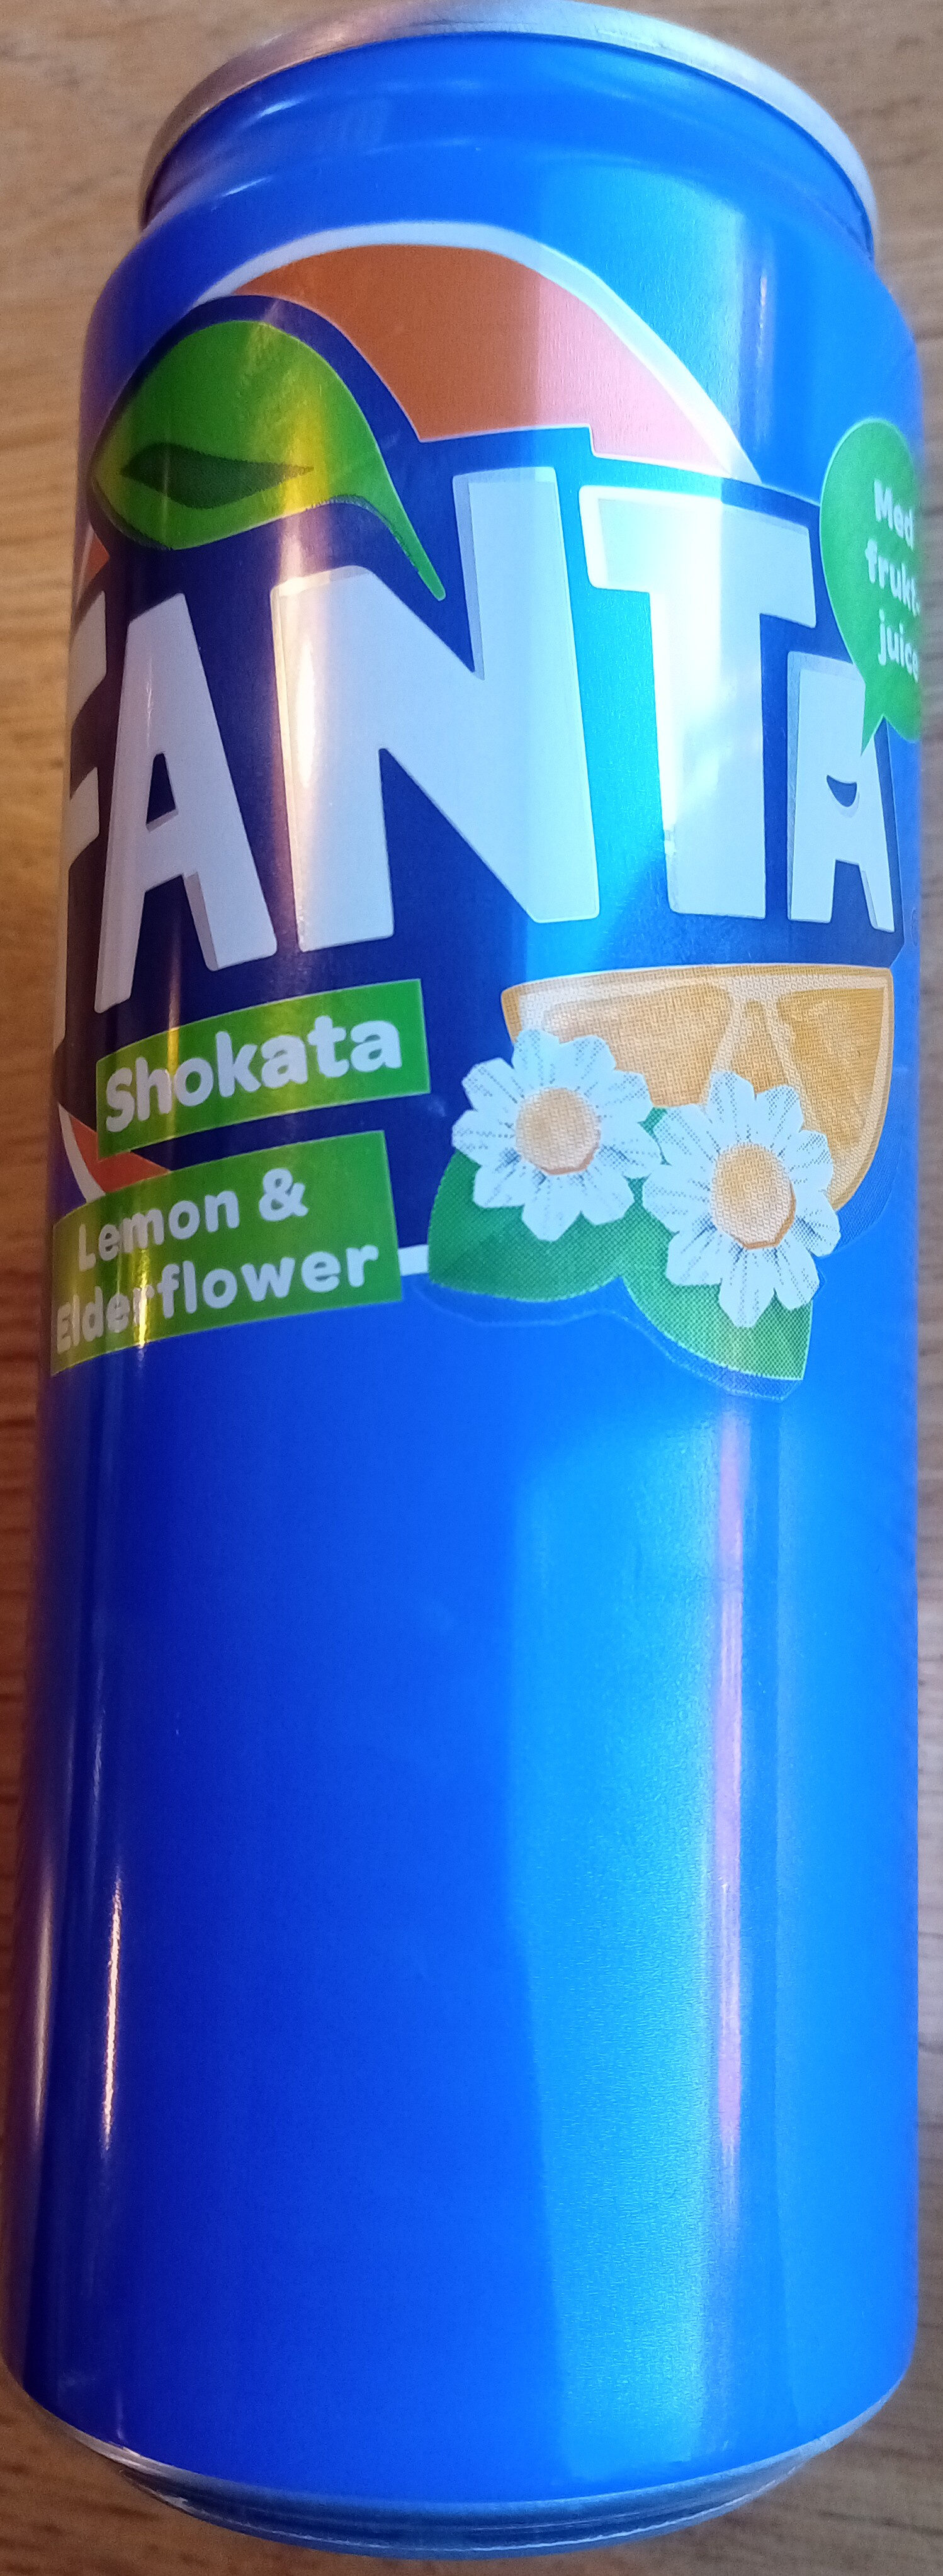 Fanta Shokata Lemon & Elderflower - Produkt